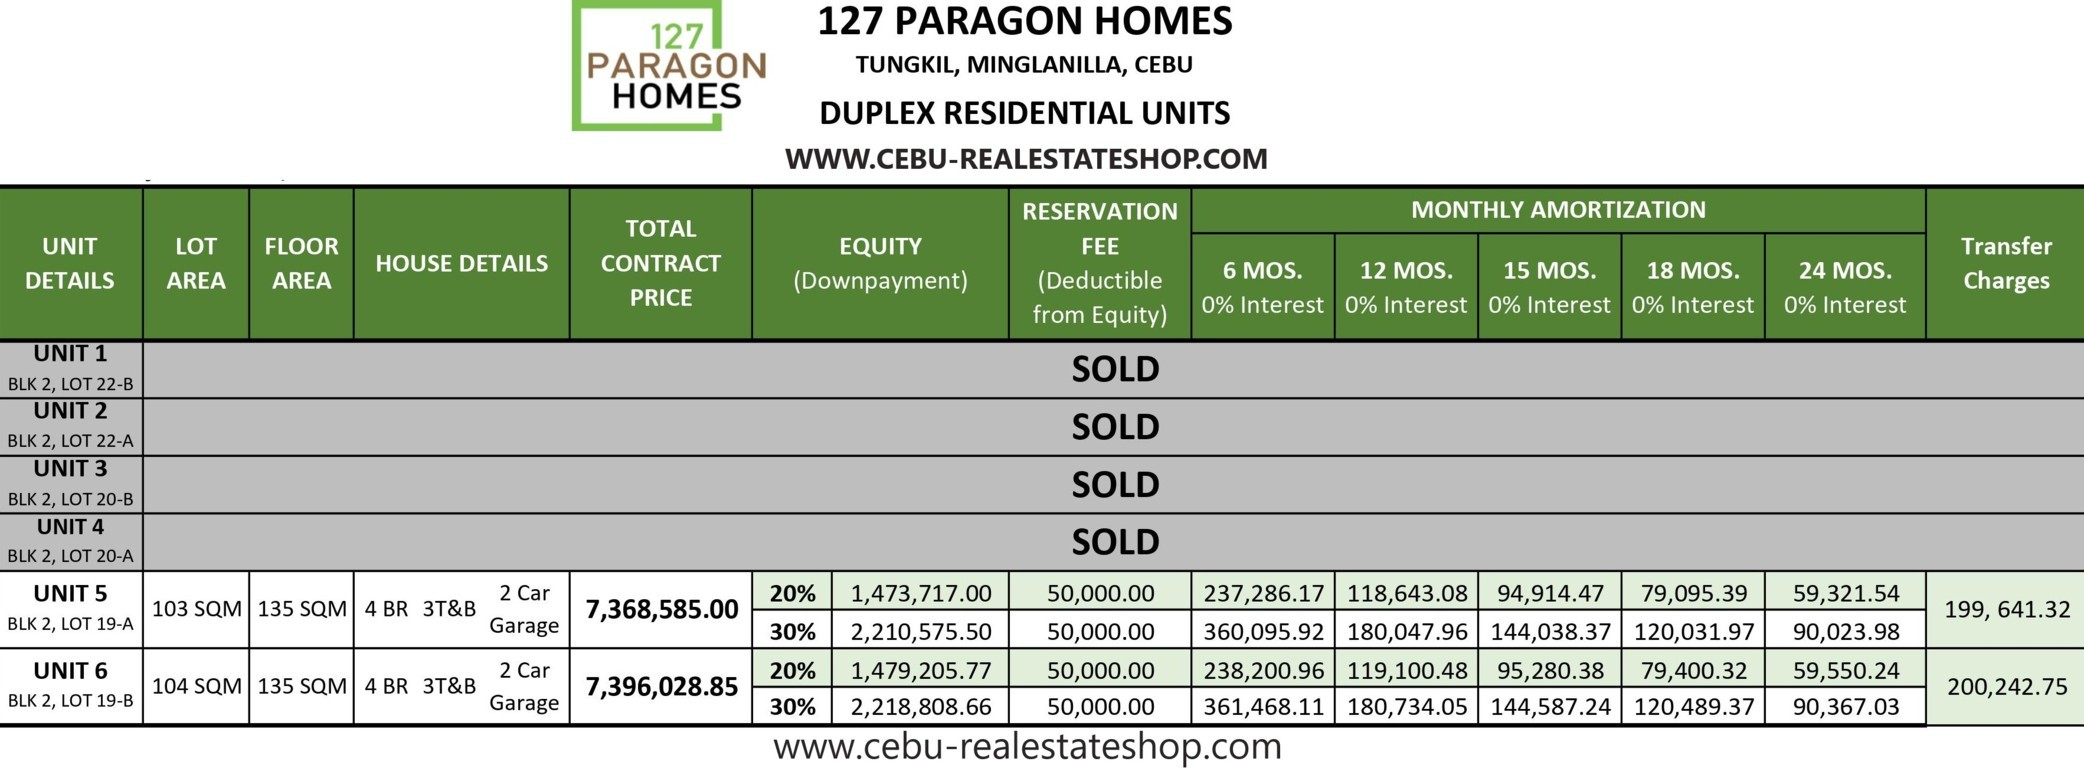 paragon subdivision price list